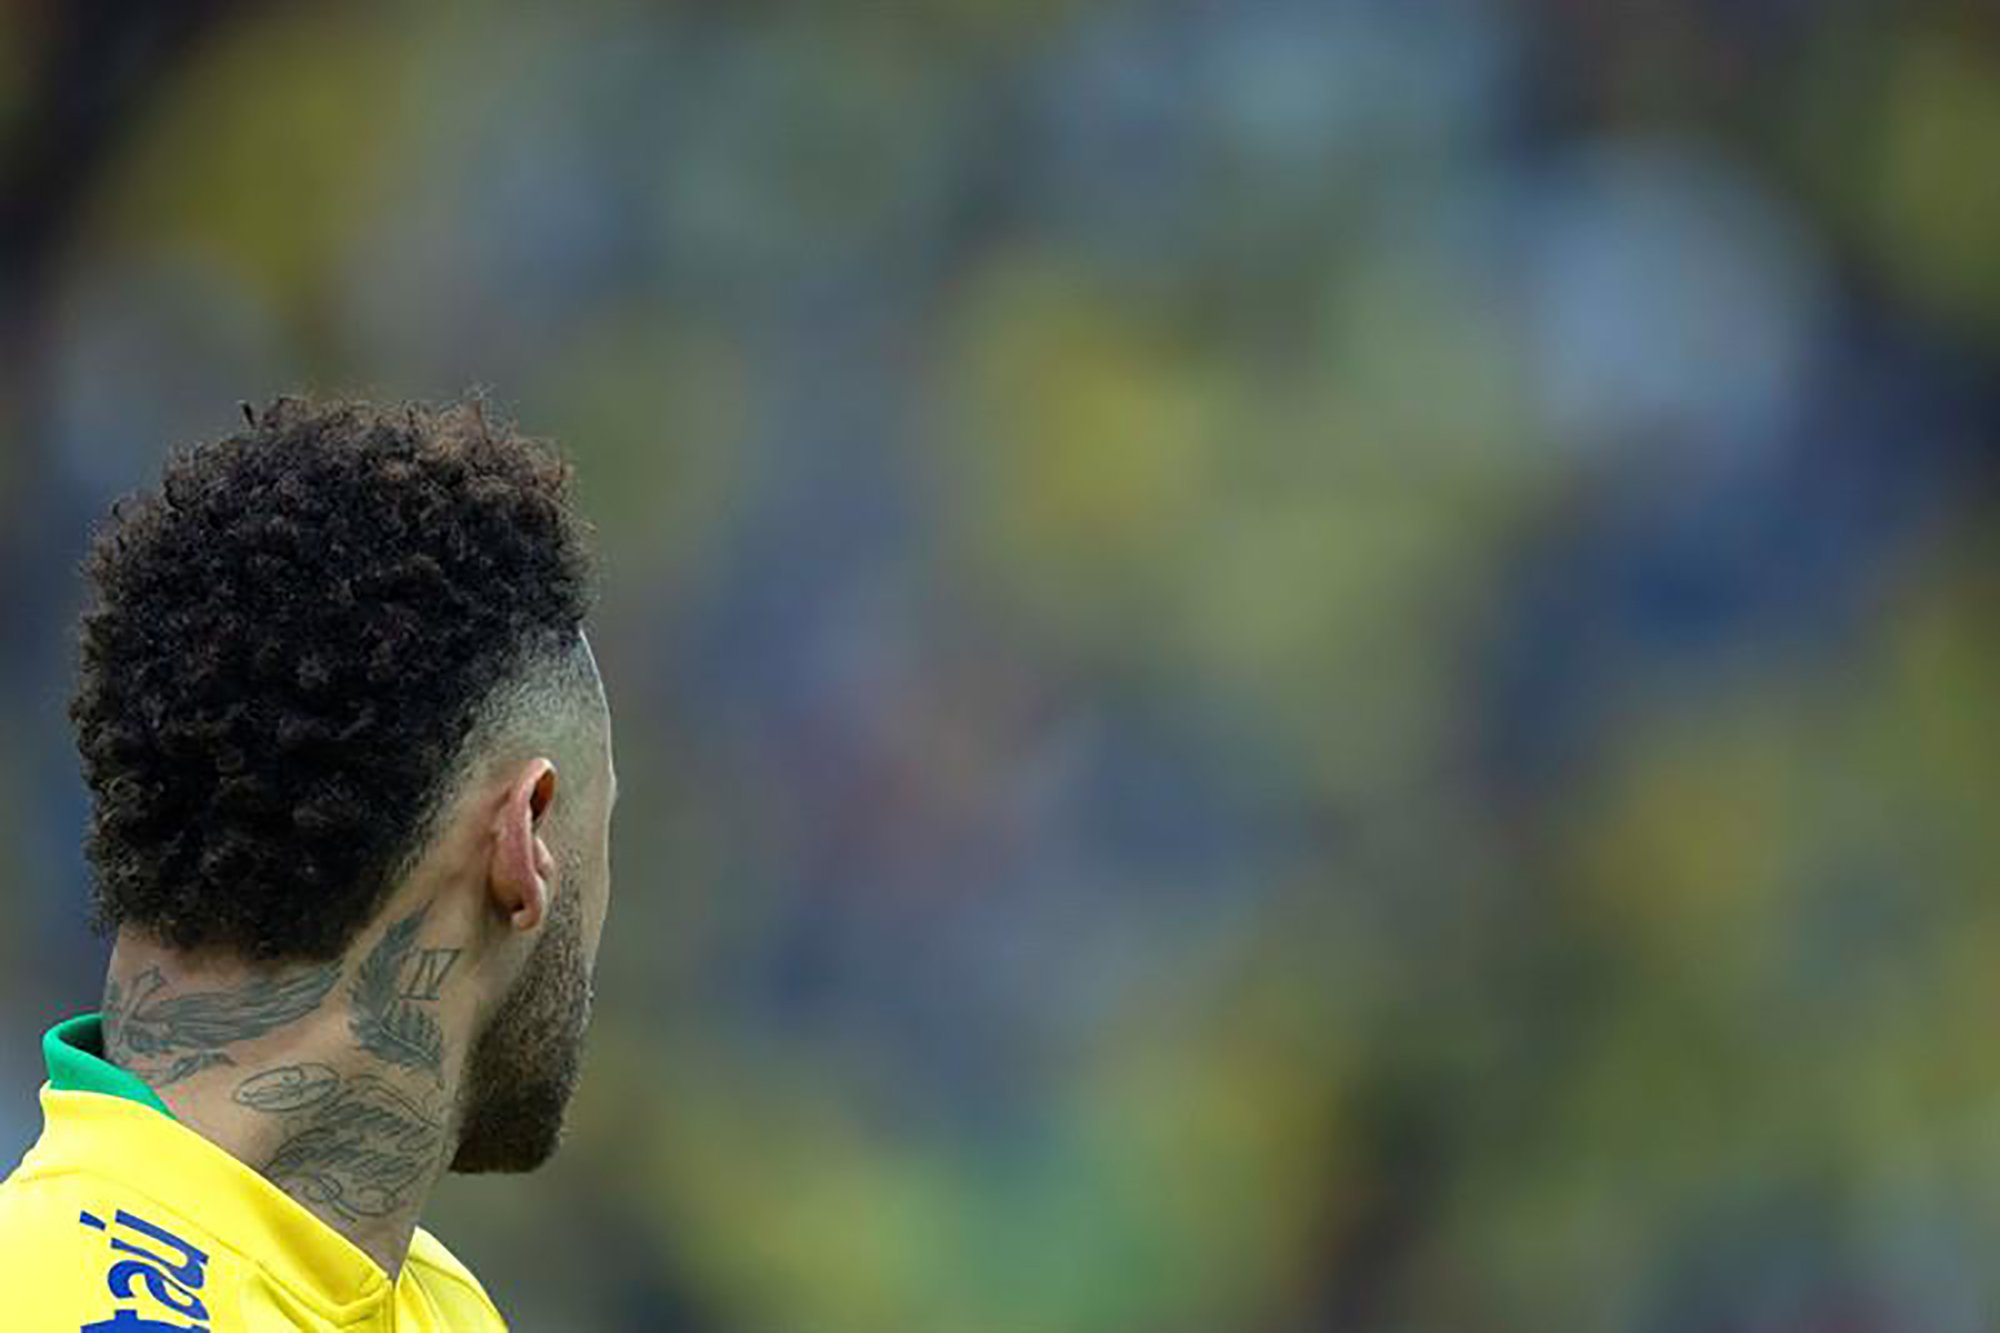 Se filtra un nuevo vídeo con imágenes reveladoras de la presunta violación de Neymar